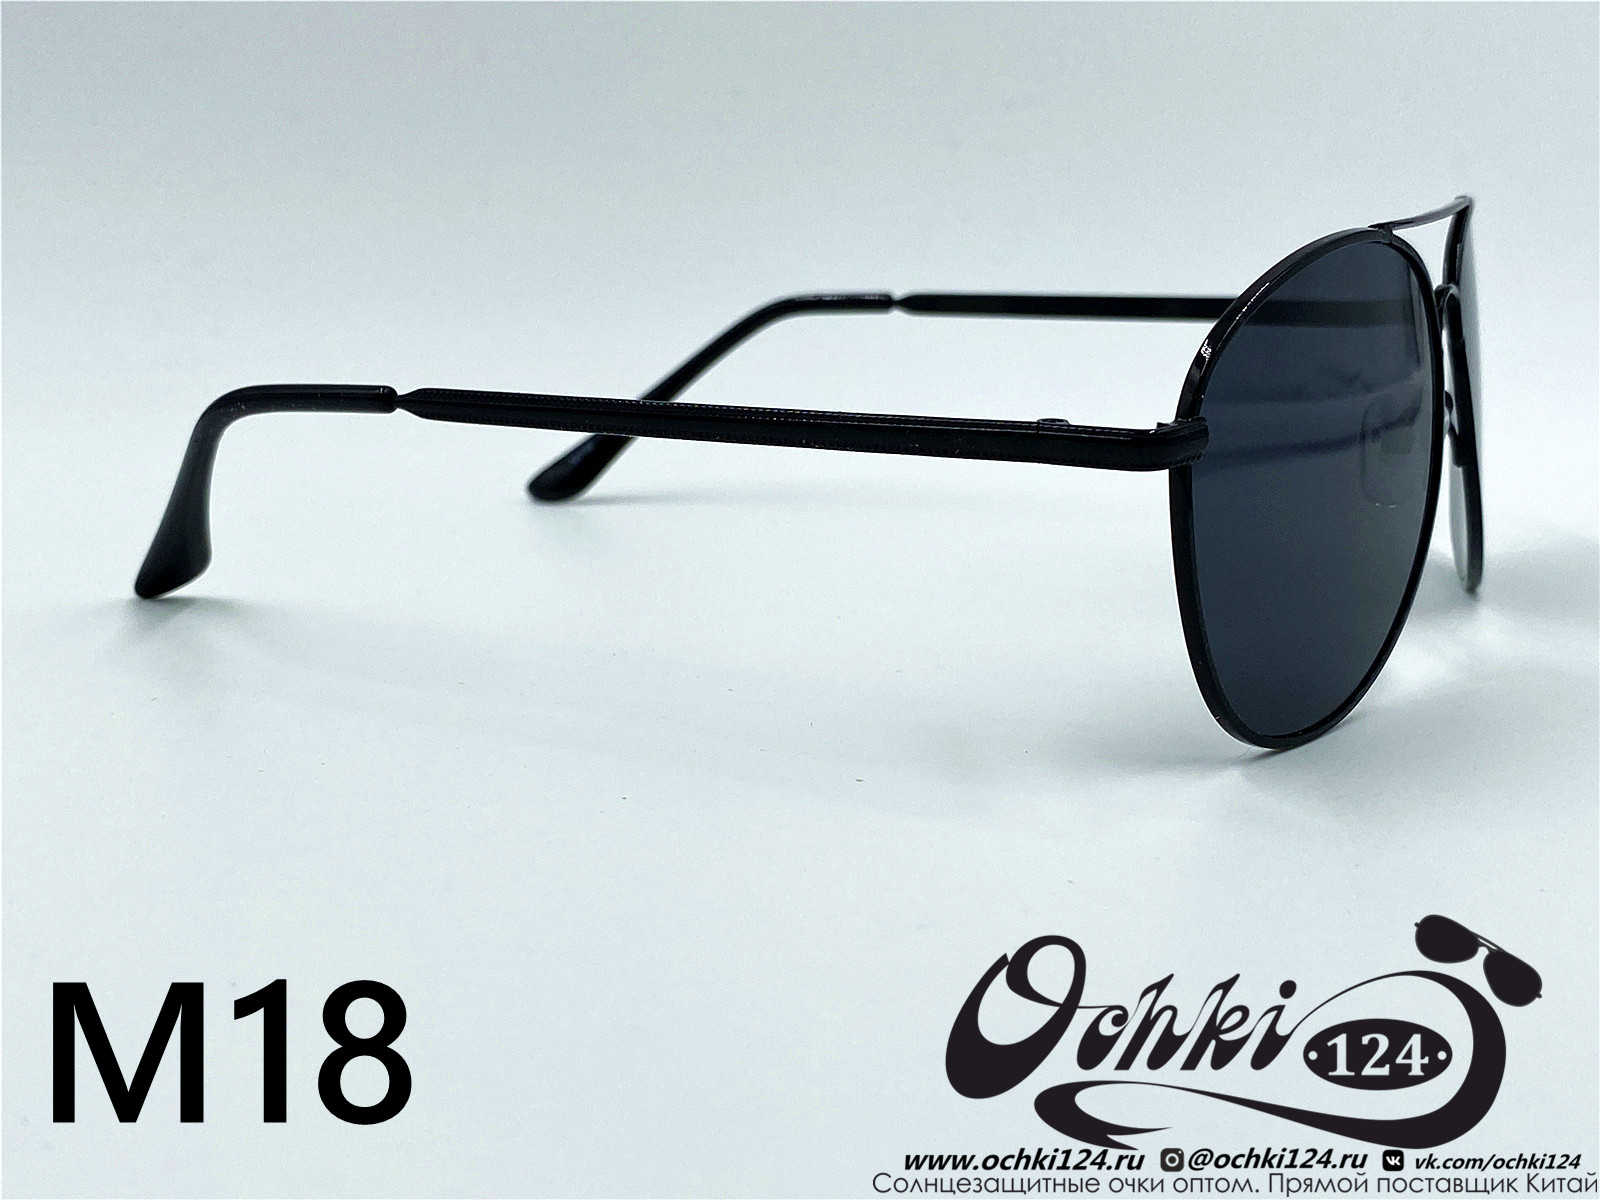  Солнцезащитные очки картинка 2022 Мужские Авиаторы KaiFeng M18-1 